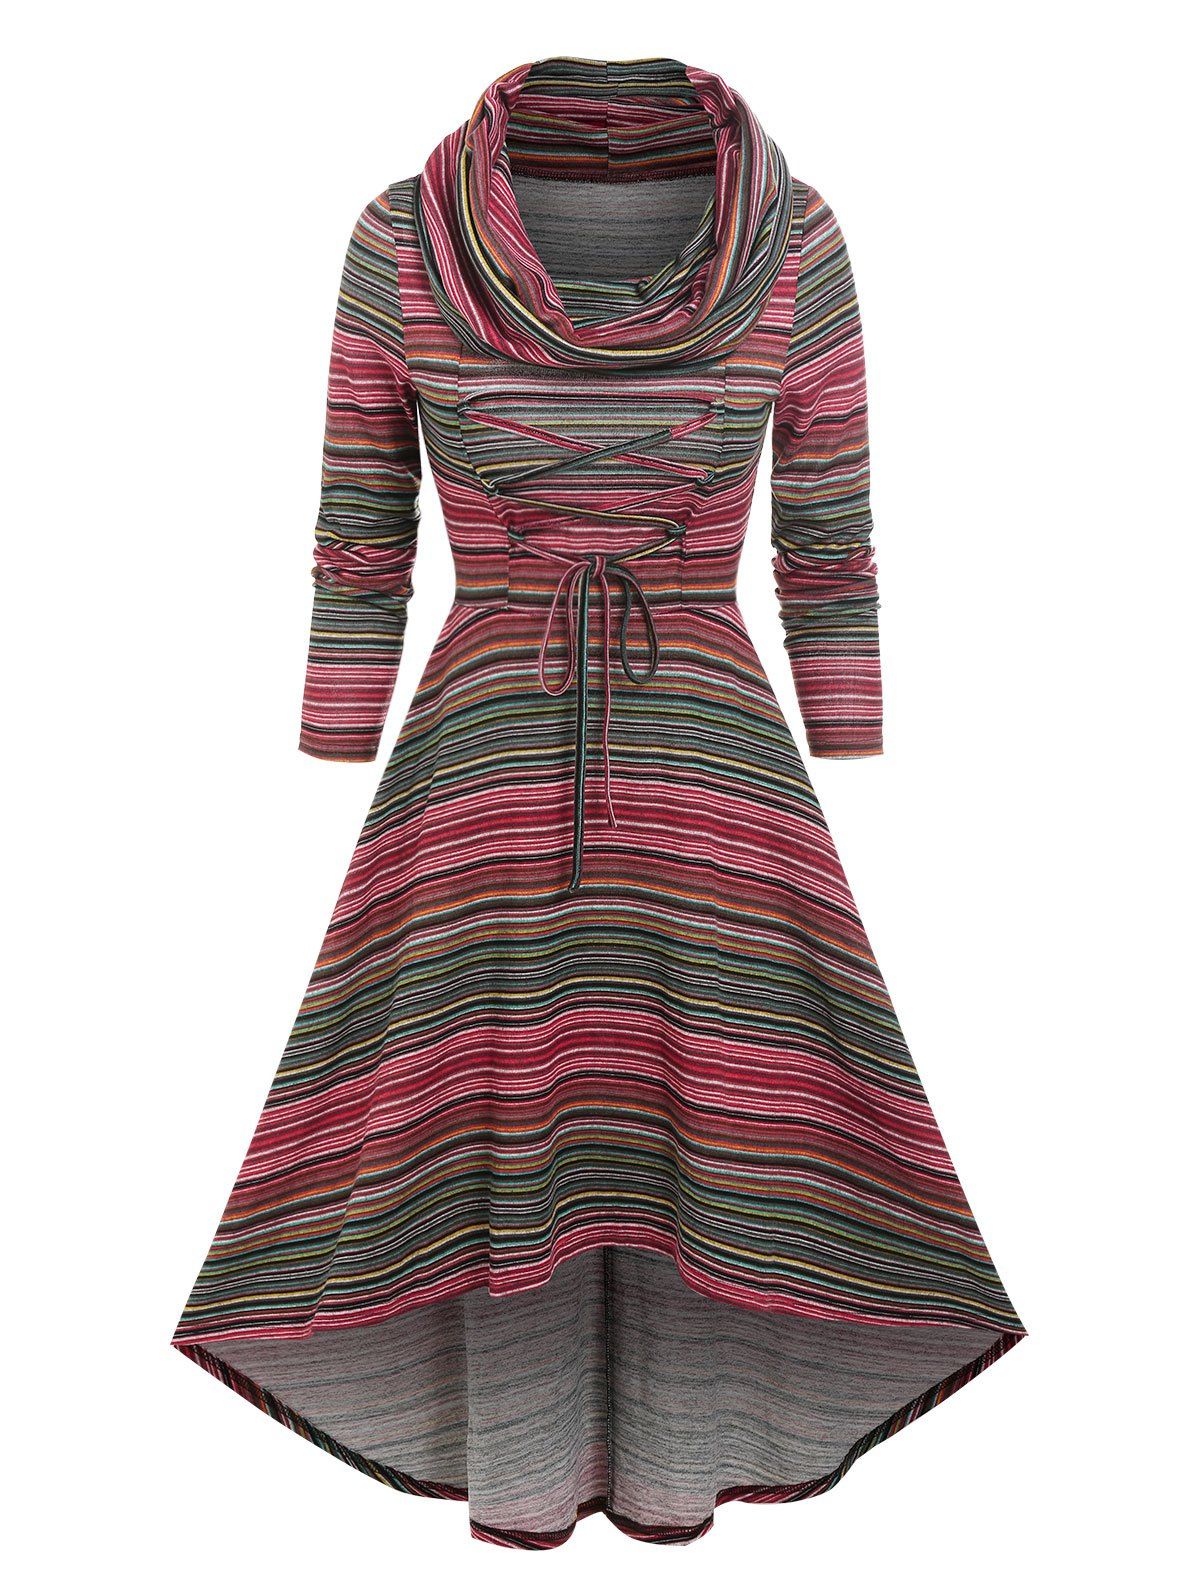 Lace Up Colorful Stripe Cowl Neck High Low Dress - multicolor XXXL